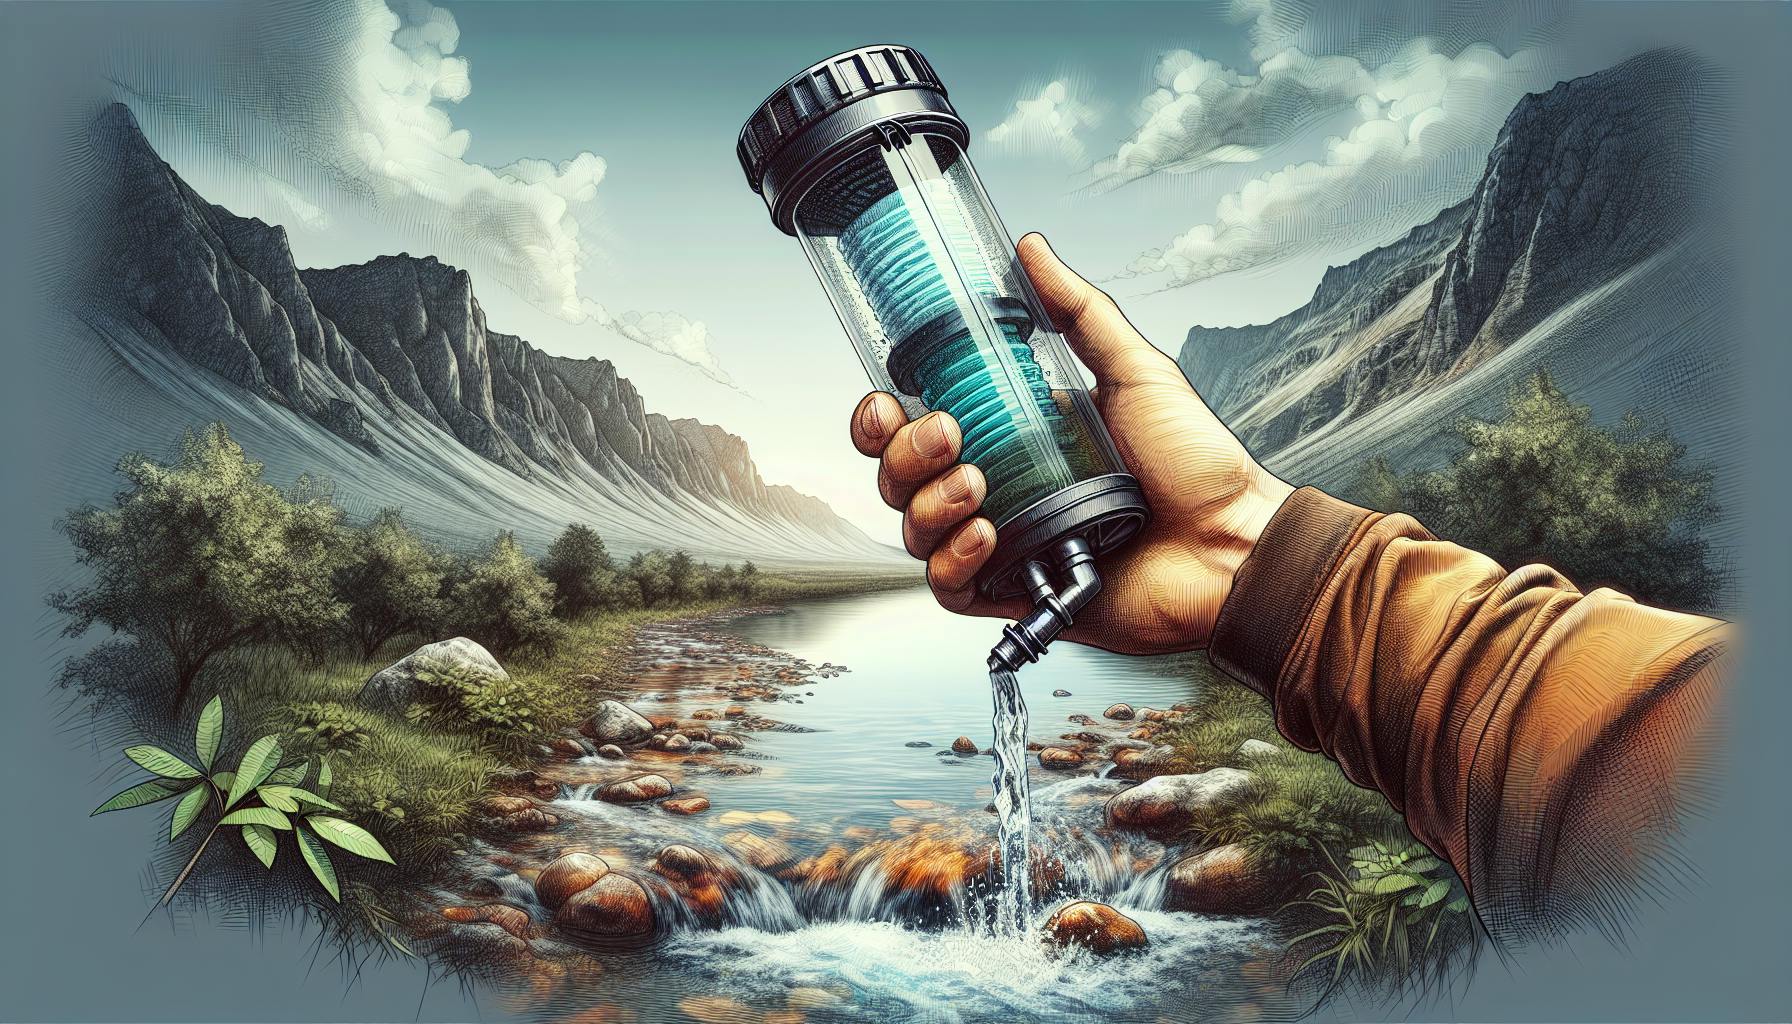 Survival Water Filter Essentials